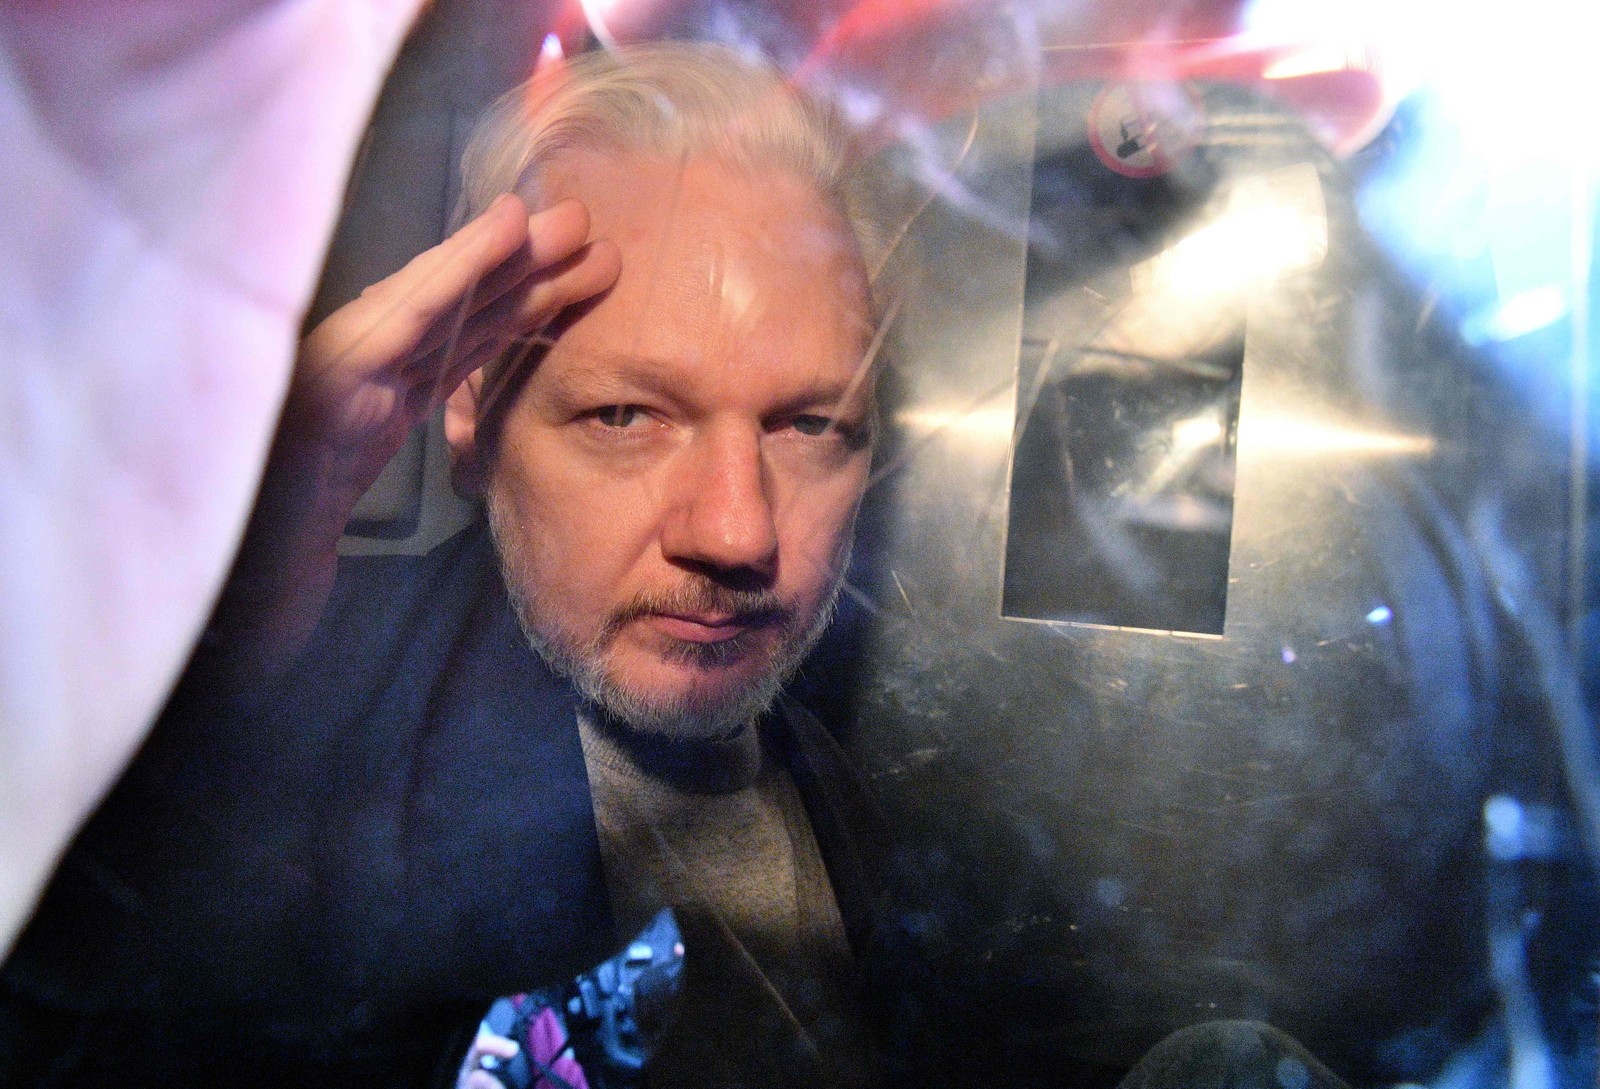 O fundador do WikiLeaks, Julian Assange, gesticula da janela de uma van da prisão enquanto é expulso do Southwark Crown Court, em Londres, em maio de 2019, após ter sido condenado a 50 semanas de prisão por violar suas condições de fiança em 2012. — Foto: Daniel LEAL-OLIVAS/AFP